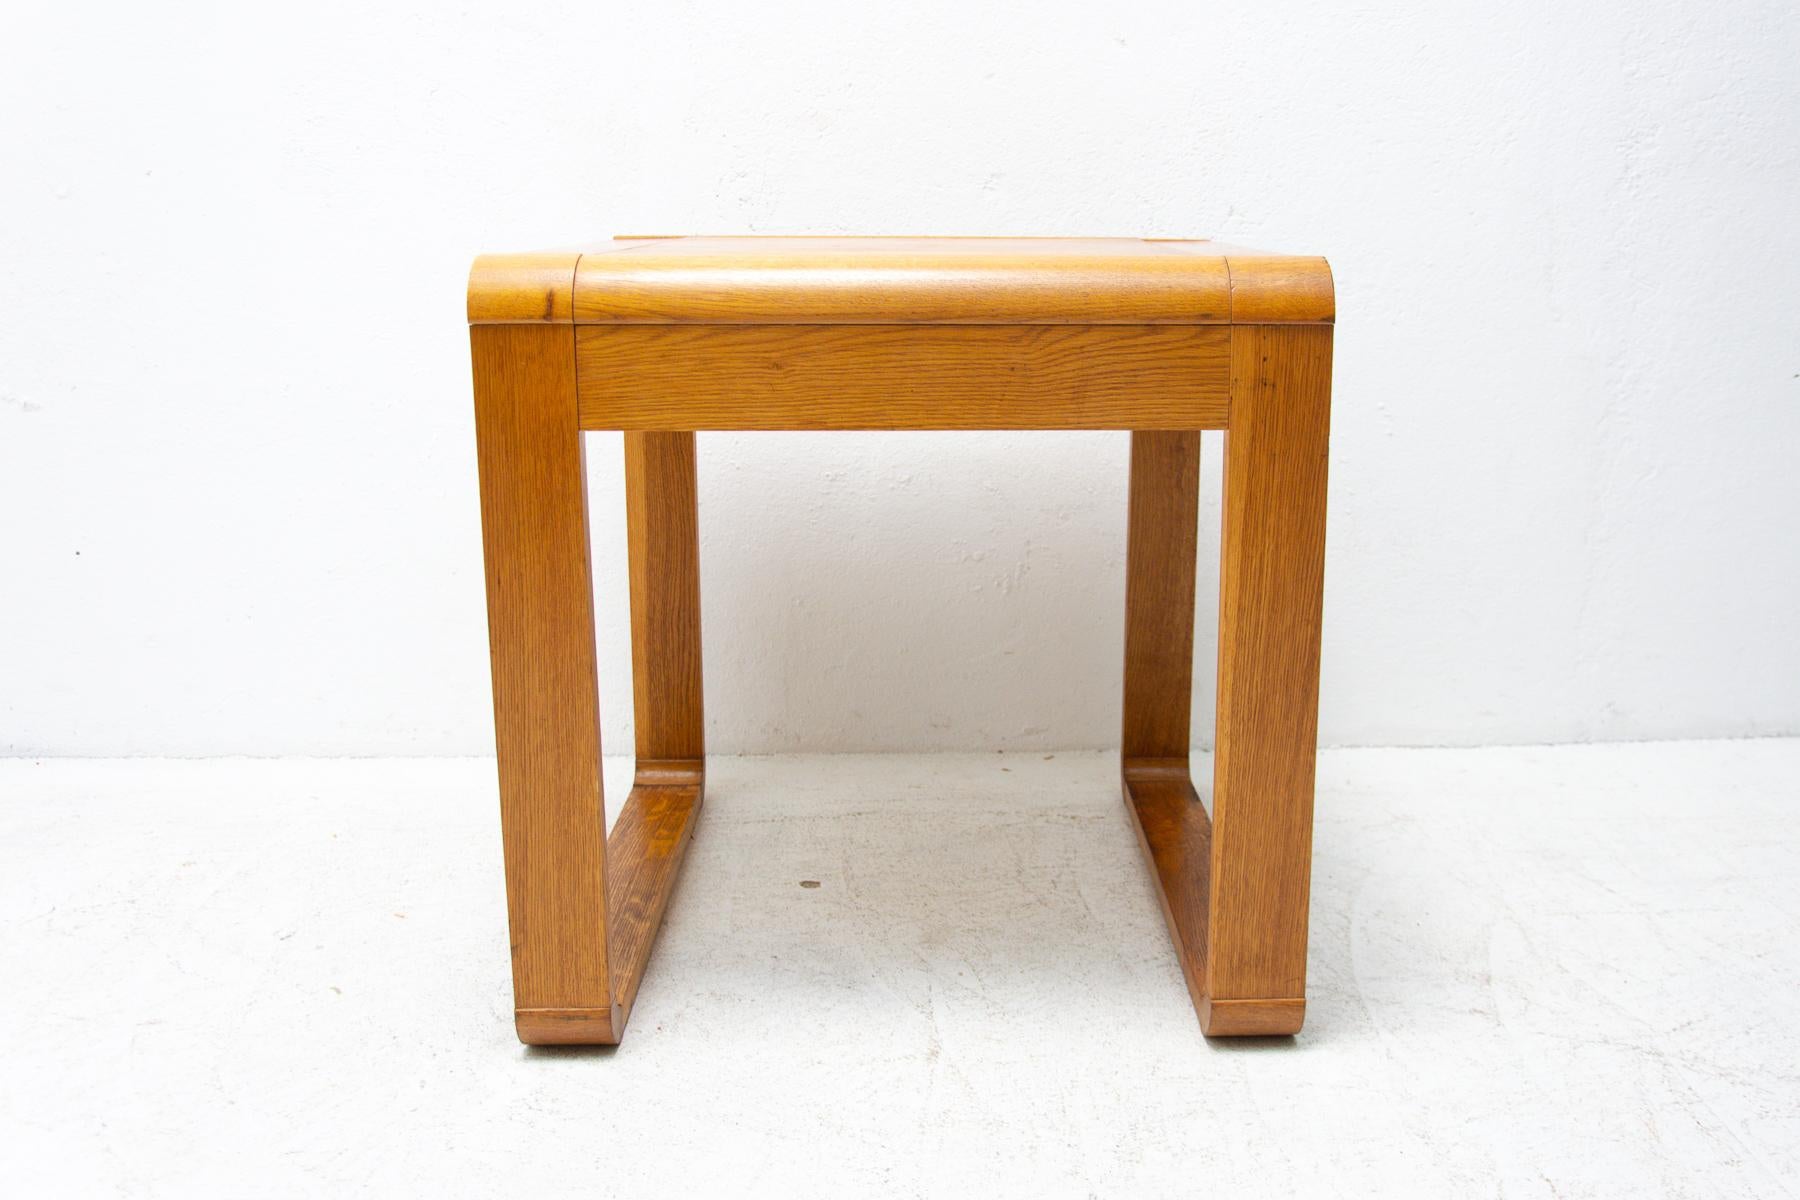 Dieser Couchtisch wurde in den 1970er Jahren in der ehemaligen Tschechoslowakei hergestellt. Der Tisch ist aus Buchenholz gefertigt. Es ist in original erhaltenem Zustand ohne Beschädigungen, zeigt Alters- und Gebrauchsspuren.